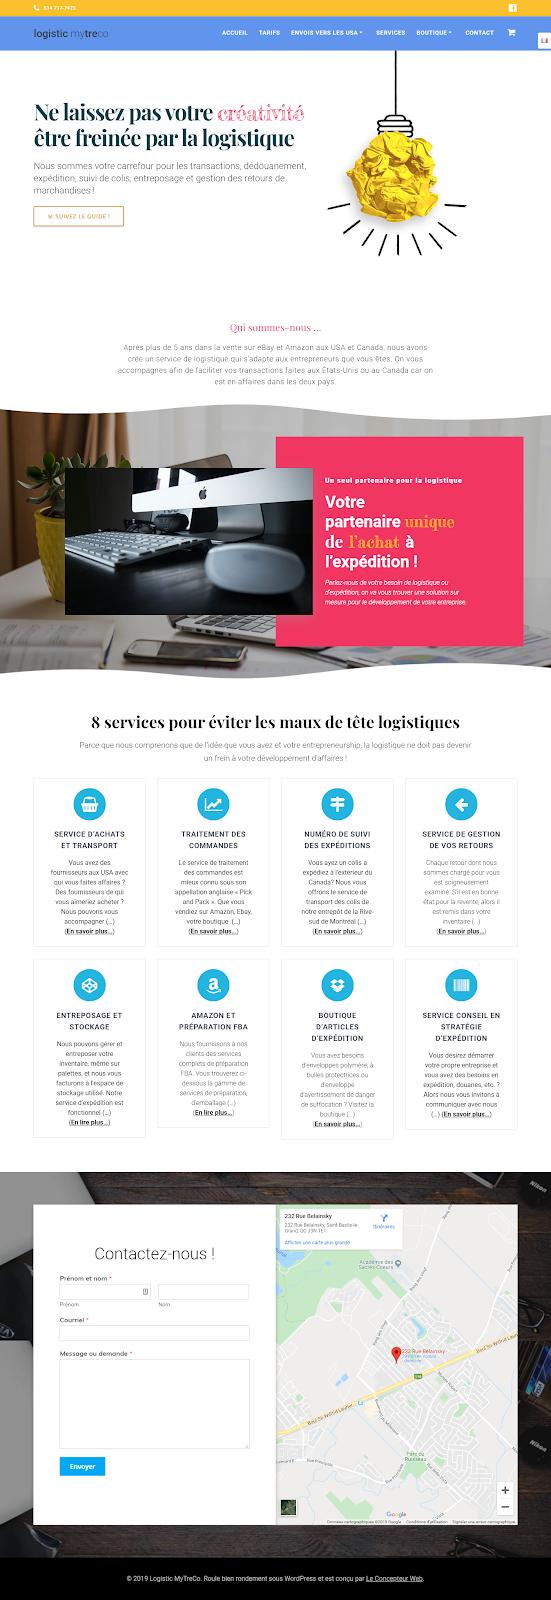 WebMetric,Le Concepteur Web, Le Concepteur Web - Formation Wordpress à Montréal (QC) | WebMetric